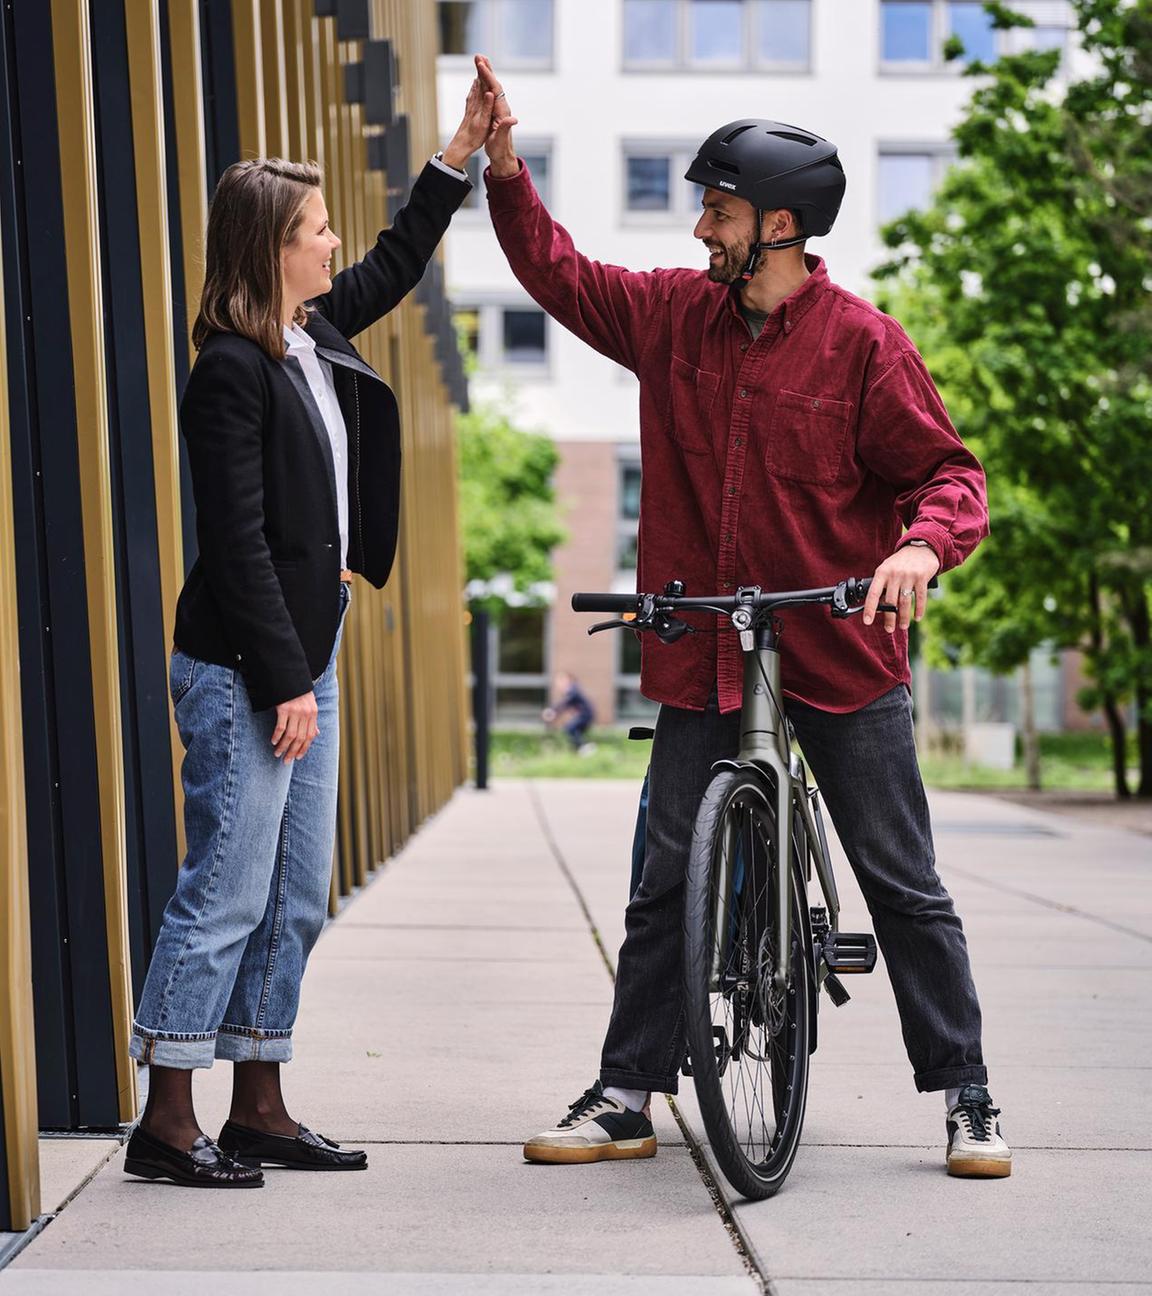 Ein Fahrradfahrer gibt seiner Arbeitgeberin die Hand.